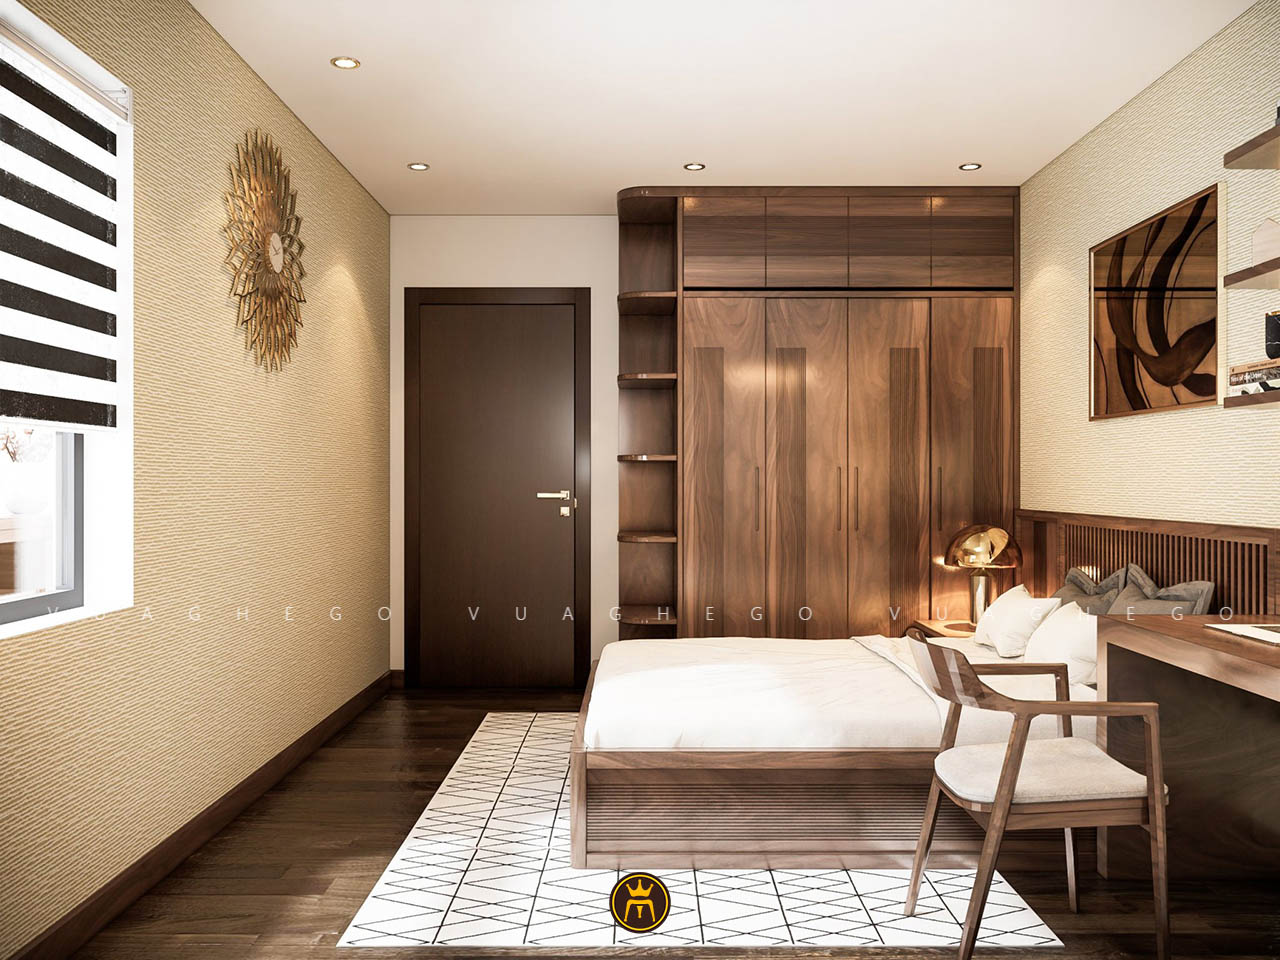 Không gian phòng ngủ chung cư được thiết kế hợp lý để tối ưu công năng